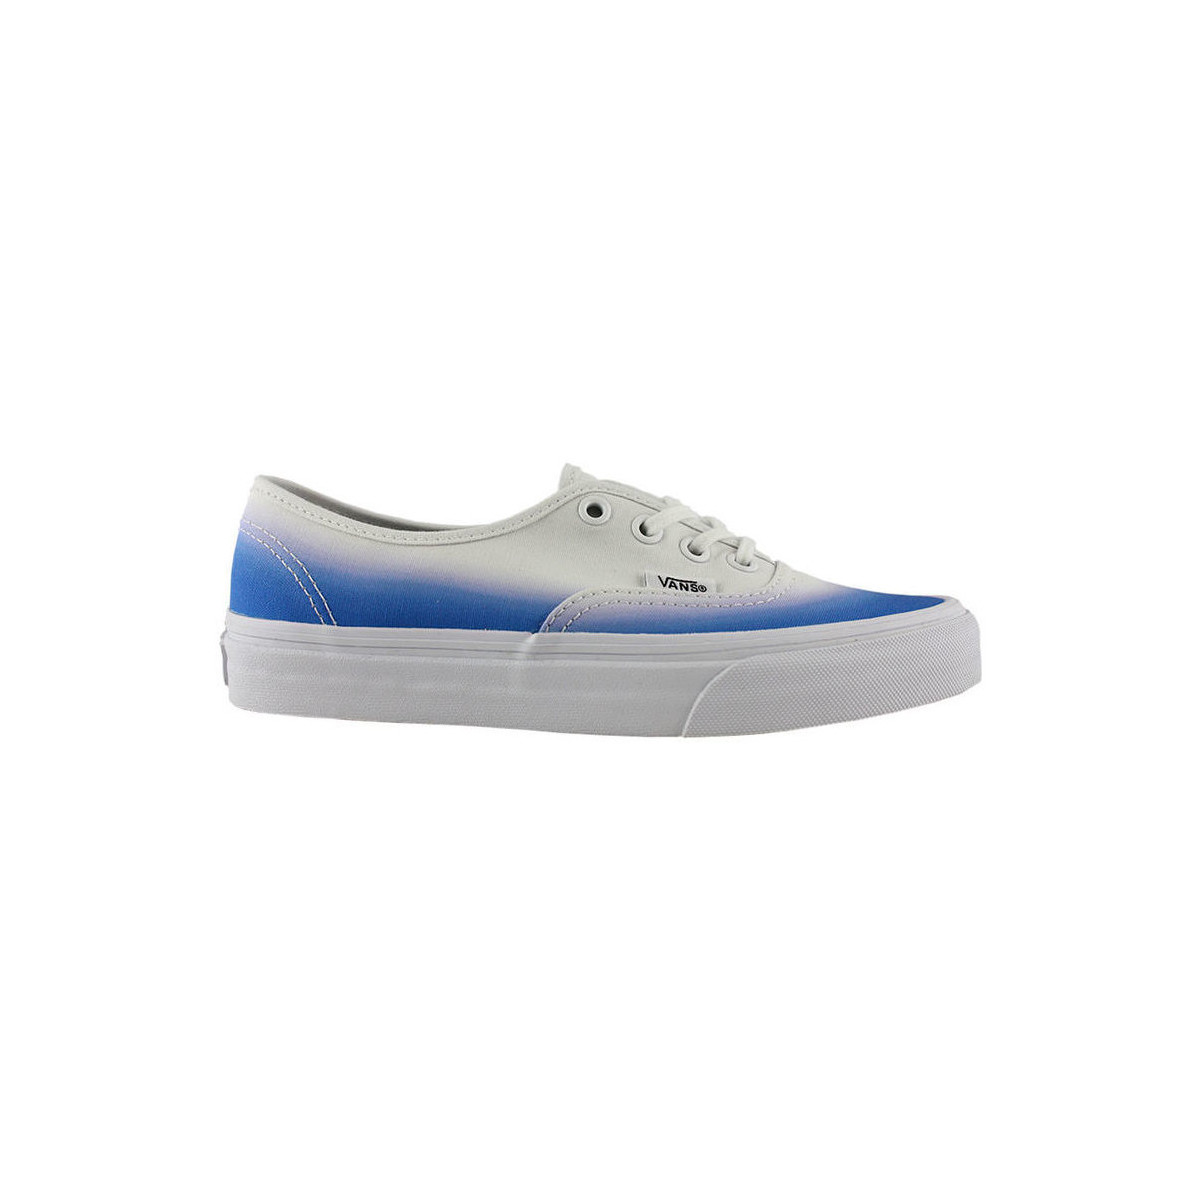 Vans  Sneakers Vans Authentic hombre blue true white